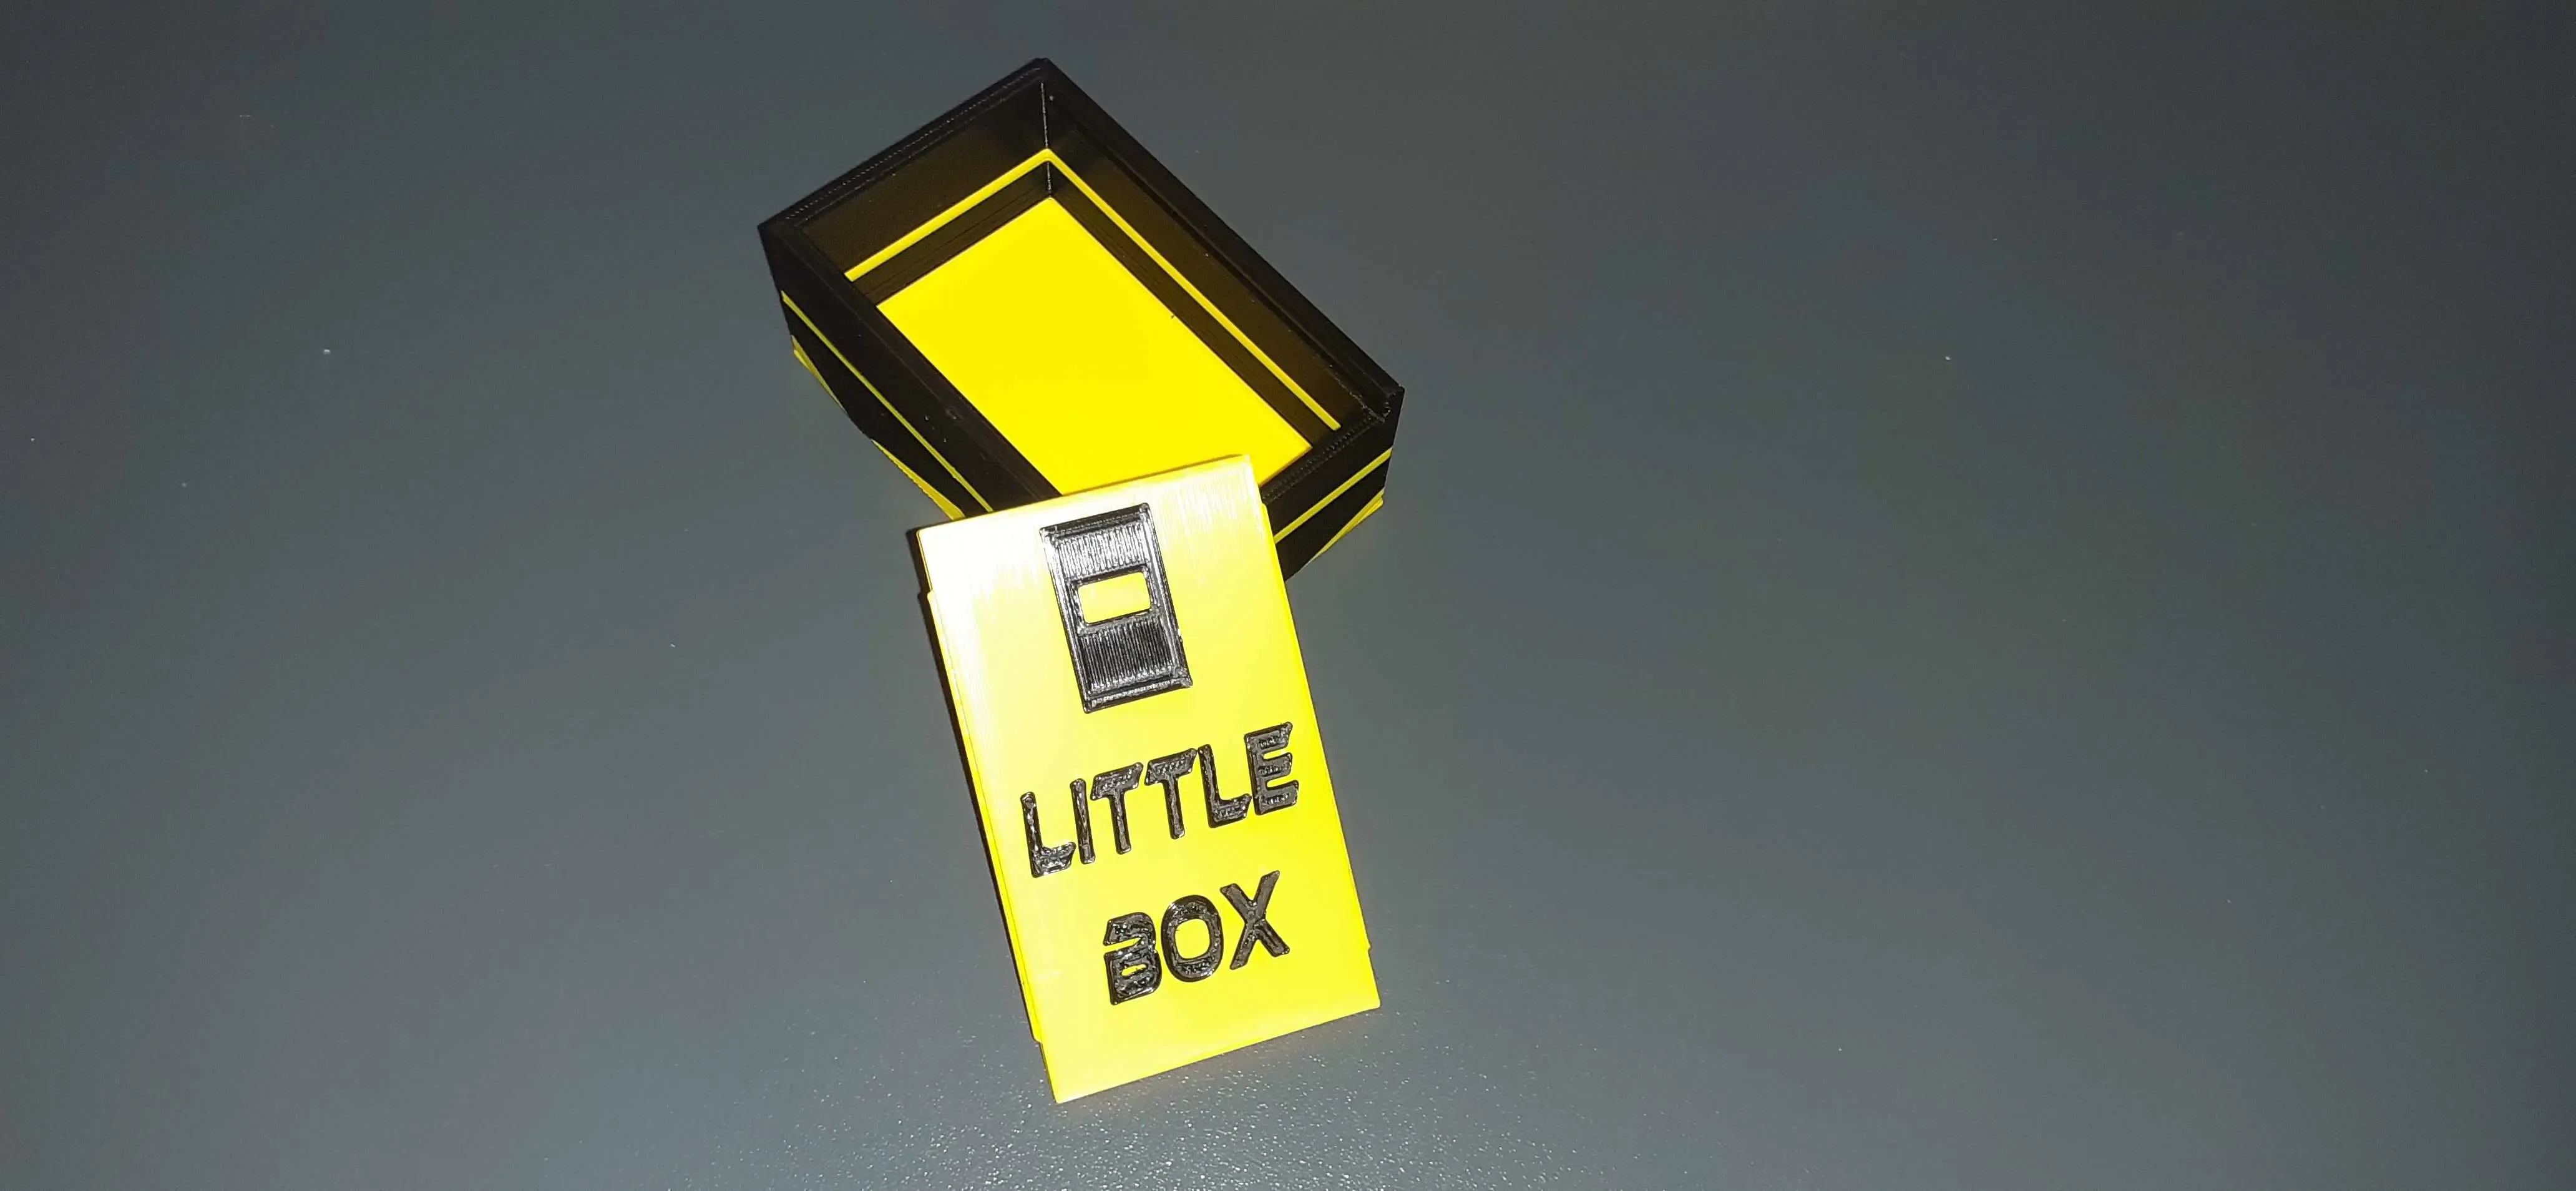 little box